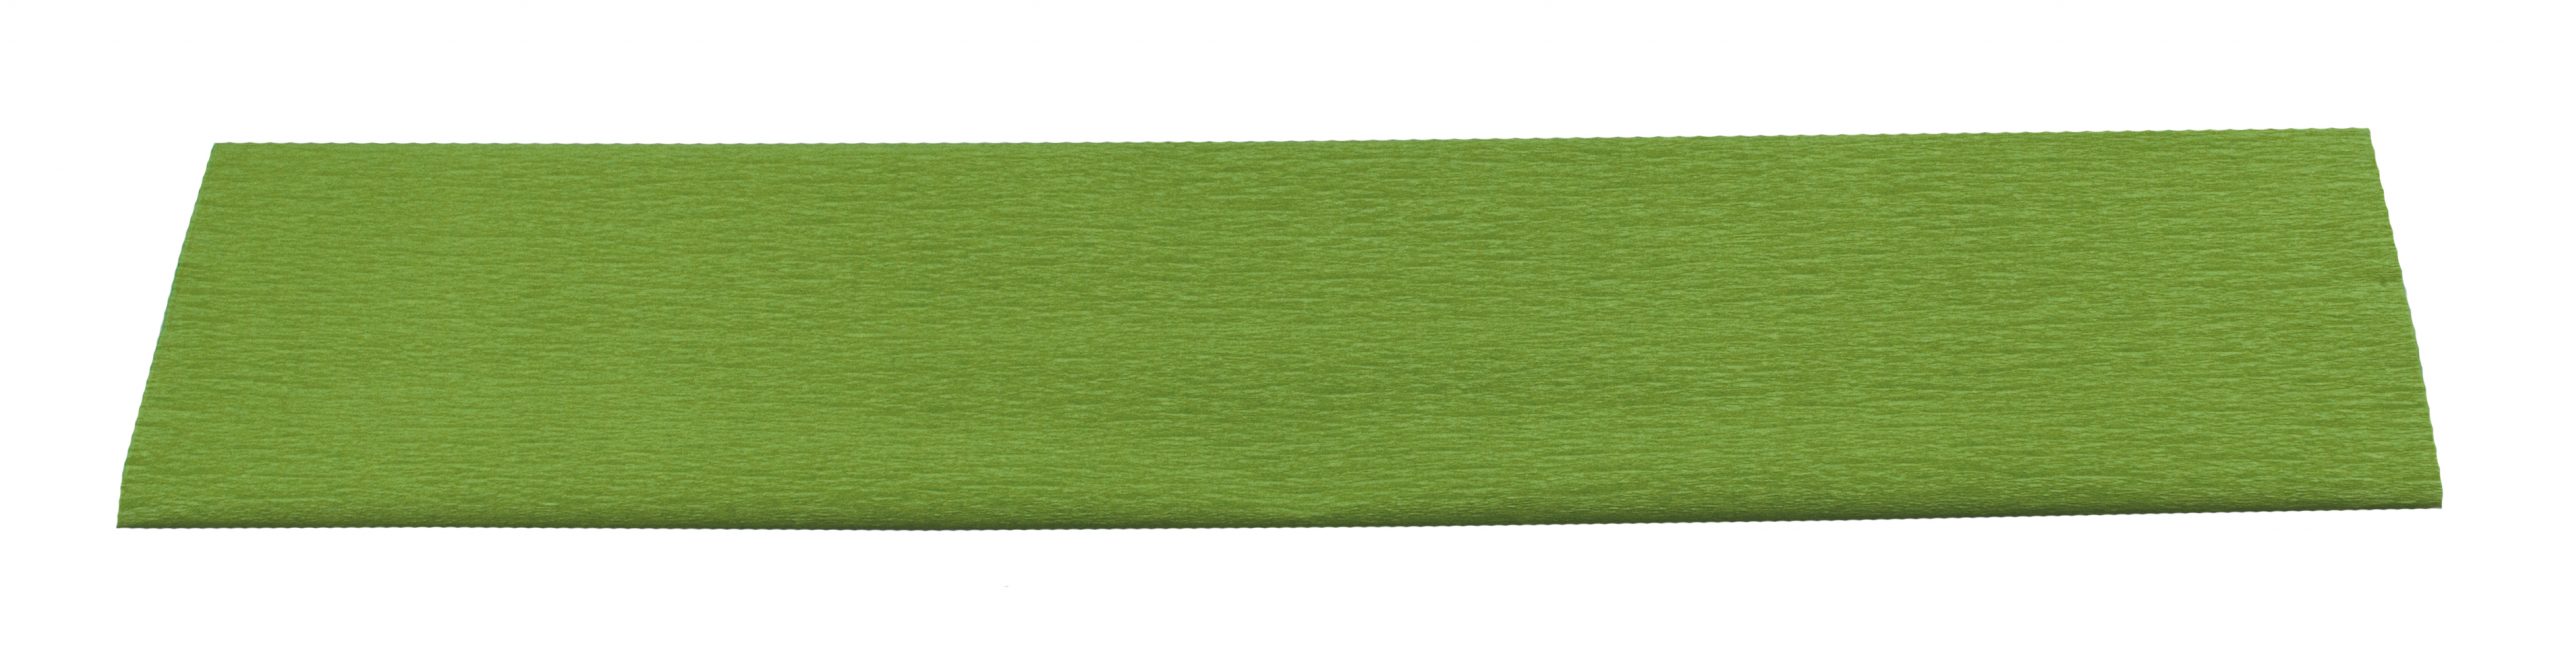 Hârtie creponată Hobby 50 x 200 cm verde deschis, Herlitz